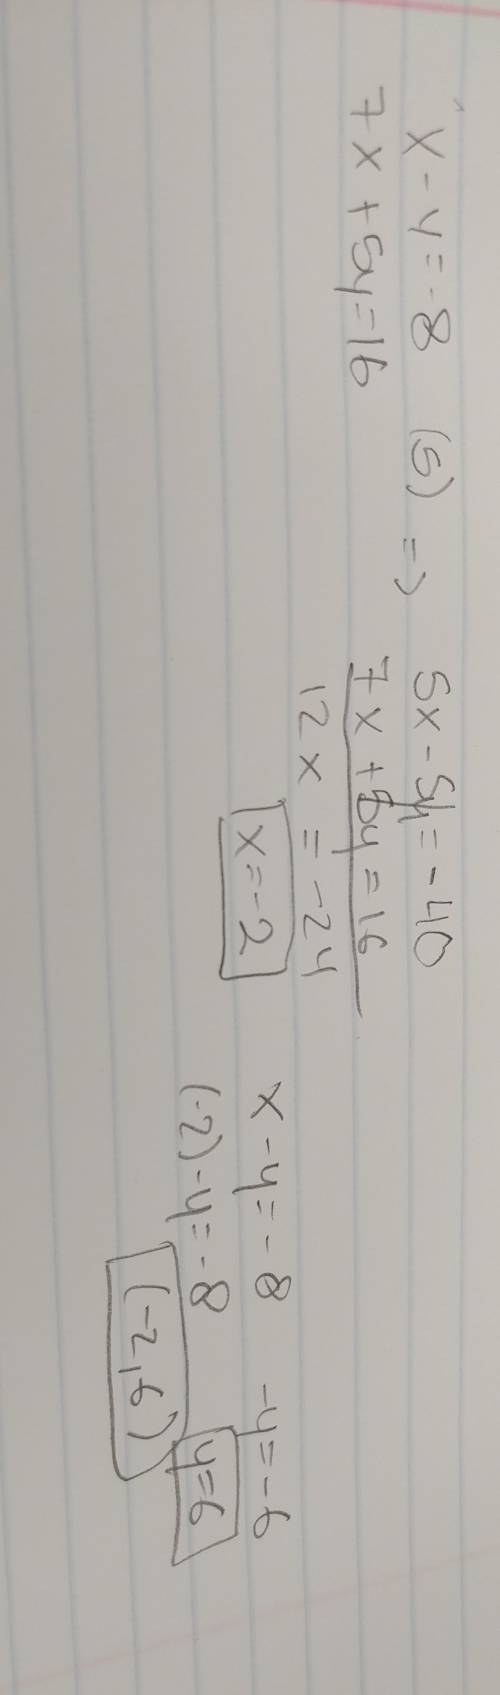 X- y = -8 7x + 5y = 16 elimination using multiplication